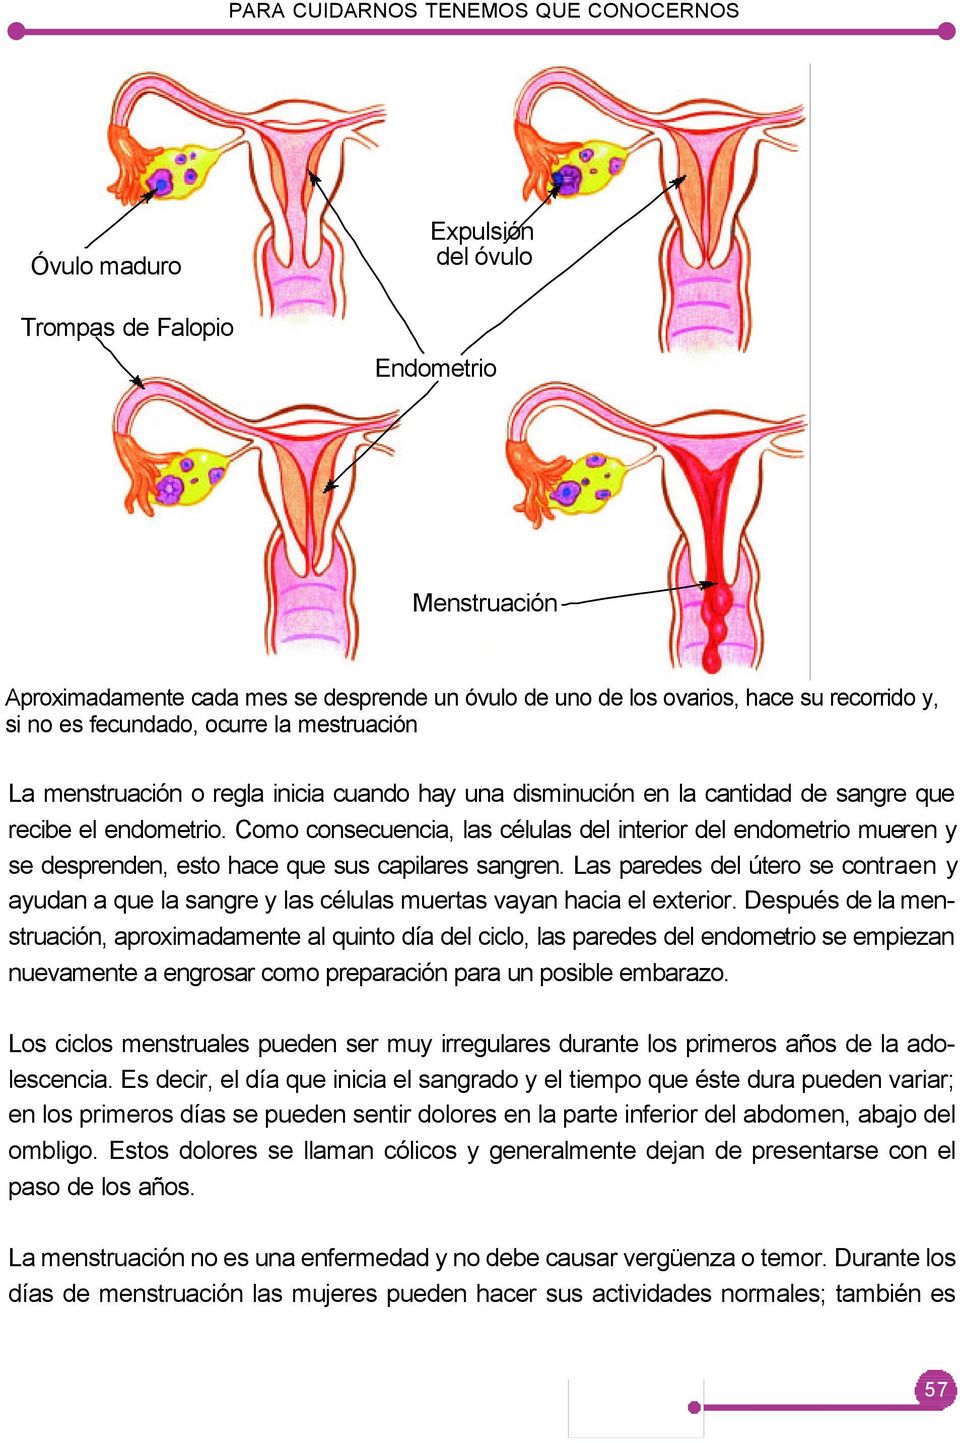 Como consecuencia, las células del interior del endometrio mueren y se desprenden, esto hace que sus capilares sangren.